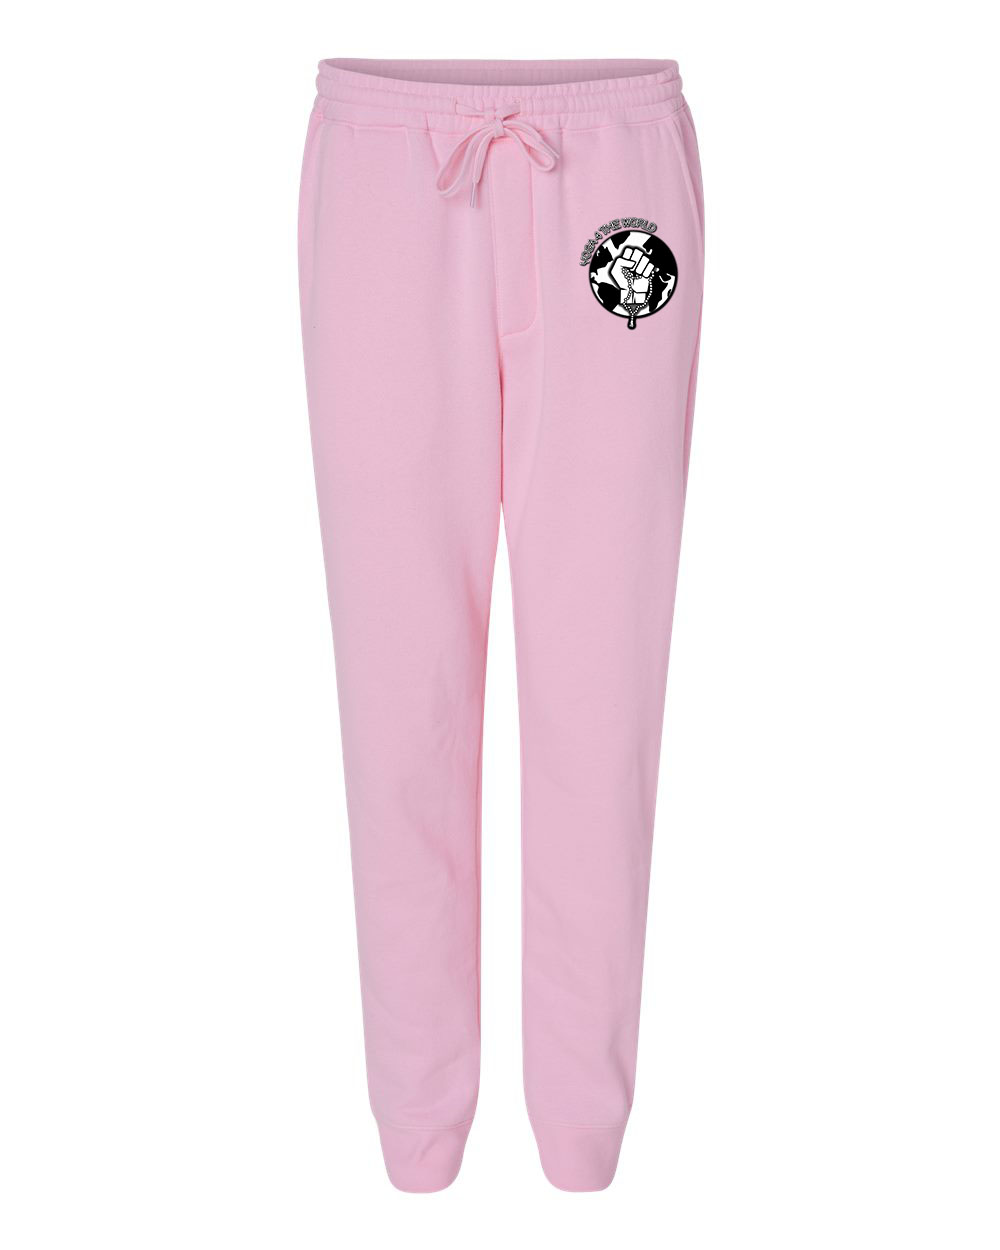 Yoga4TheWorld Light Pink Fleece Pants